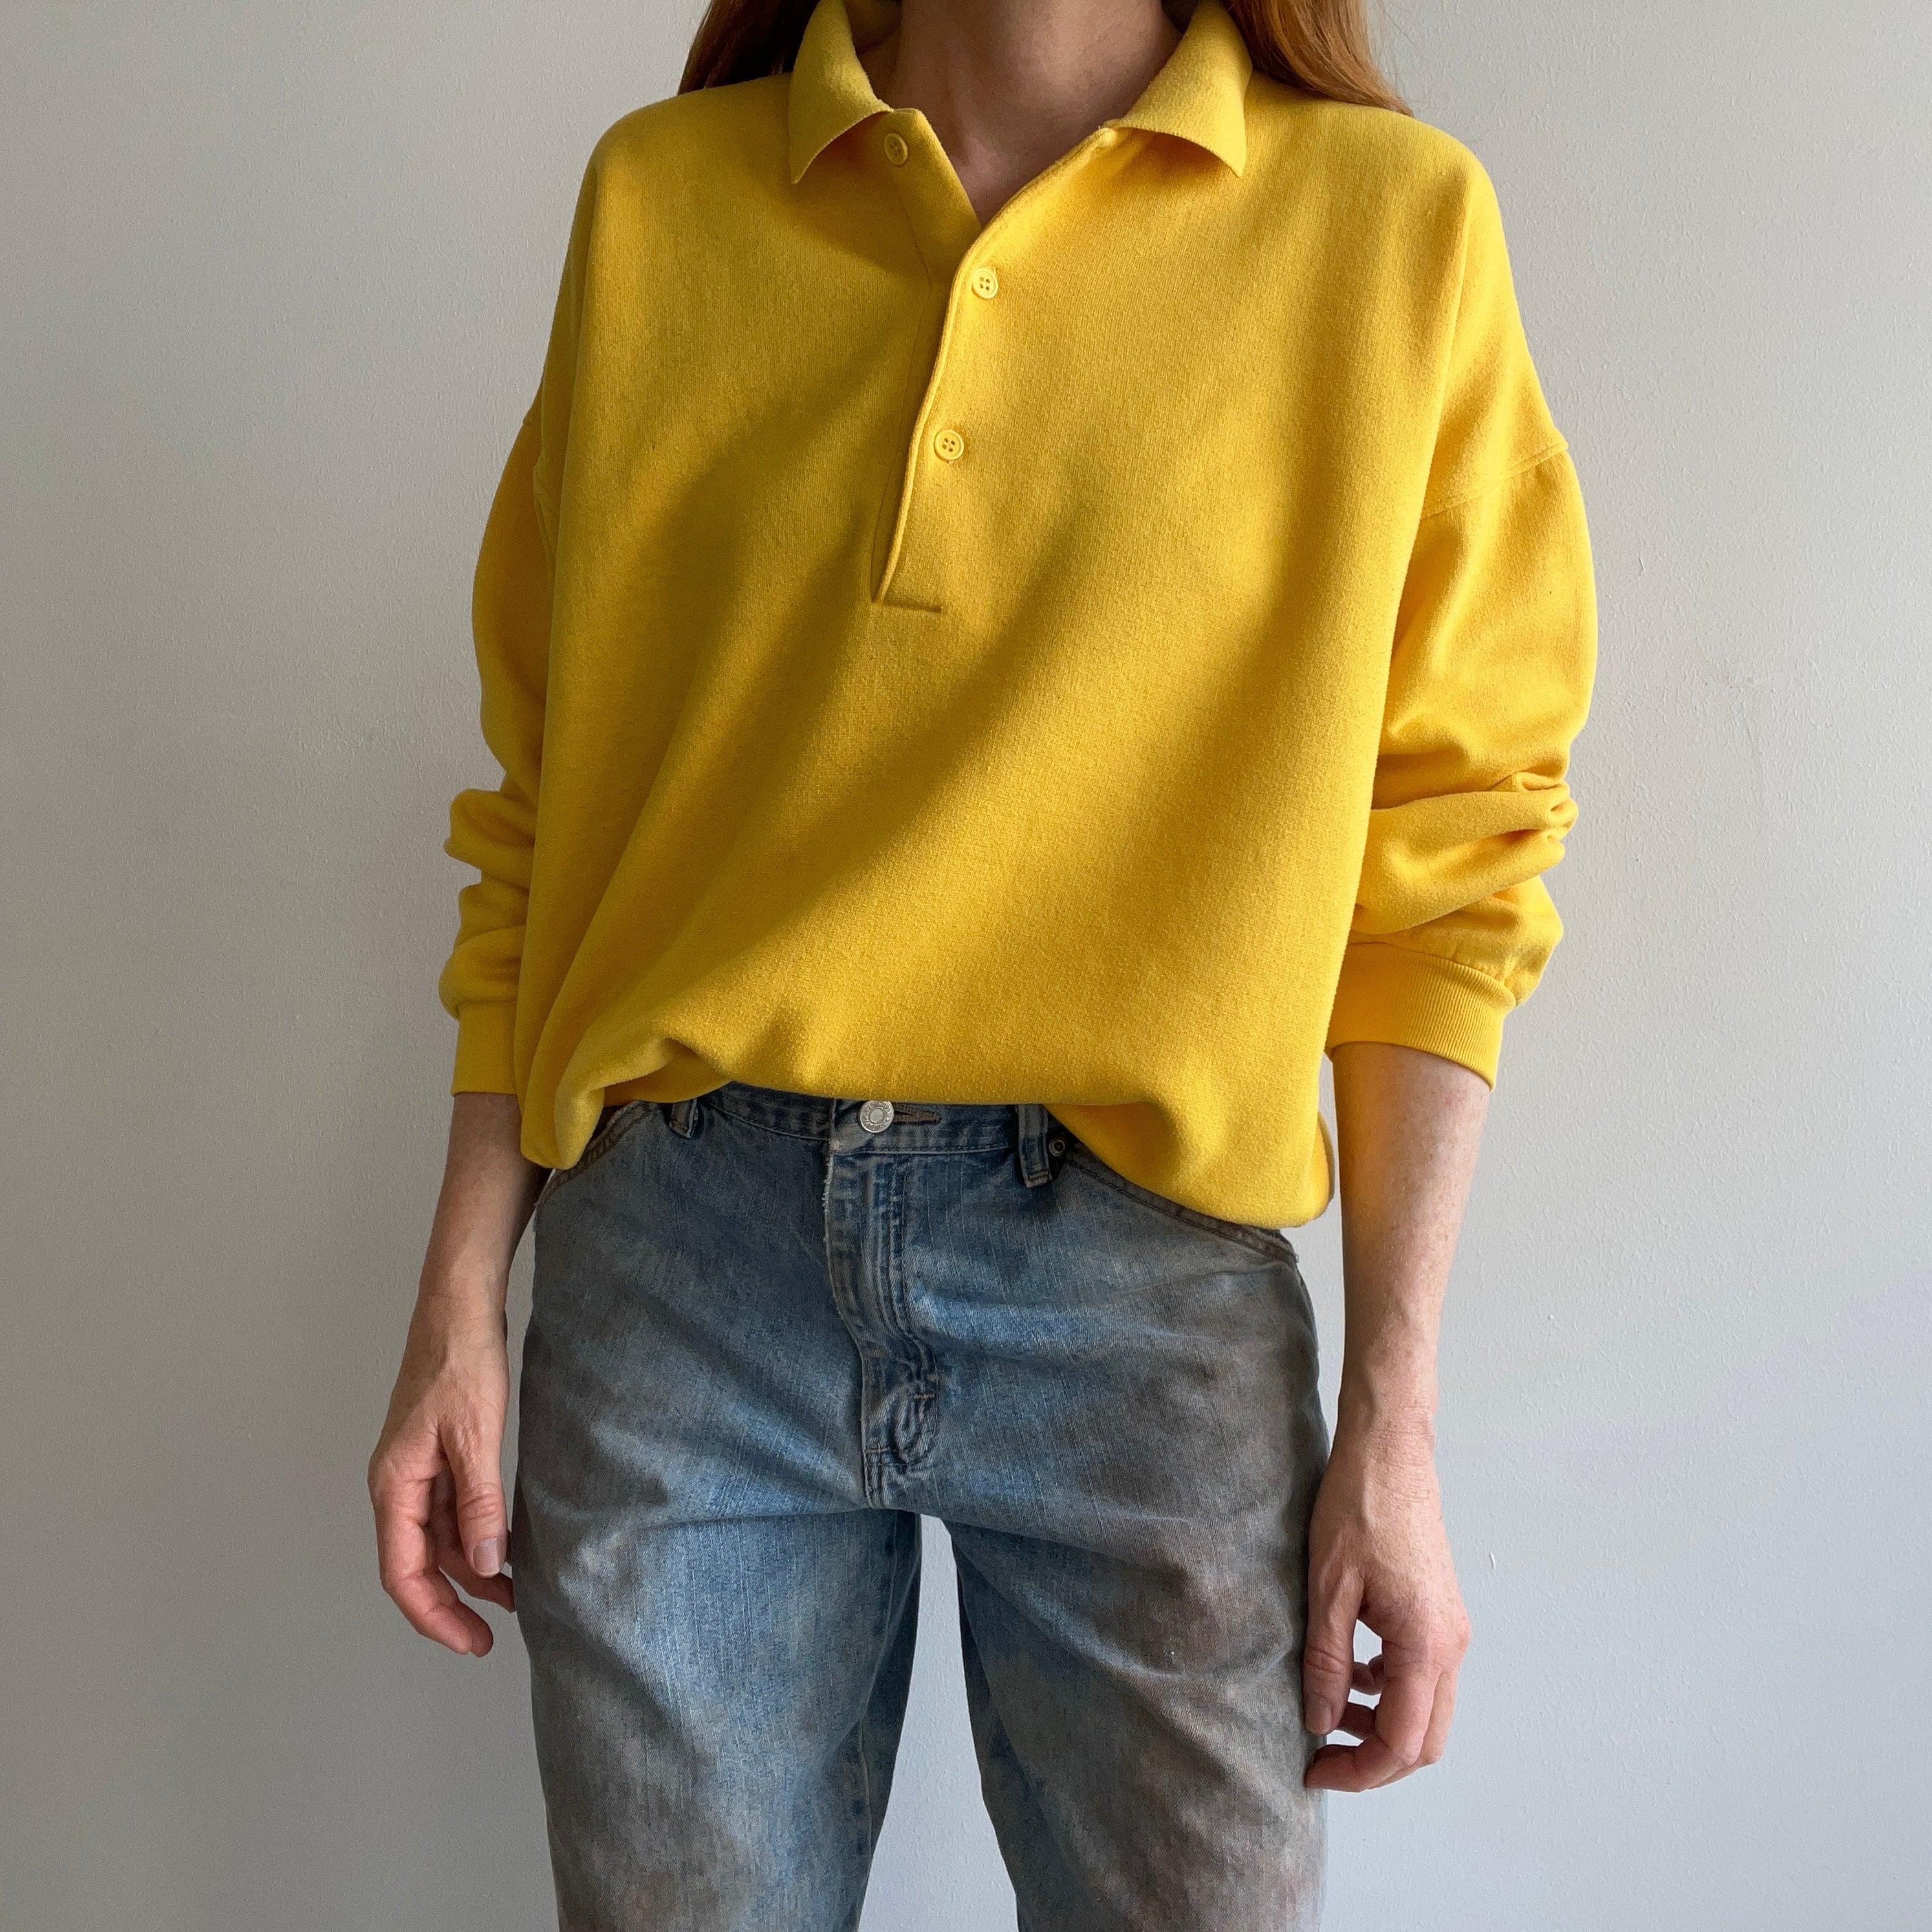 1980s Sunshine Yellow Collared Sweatshirt